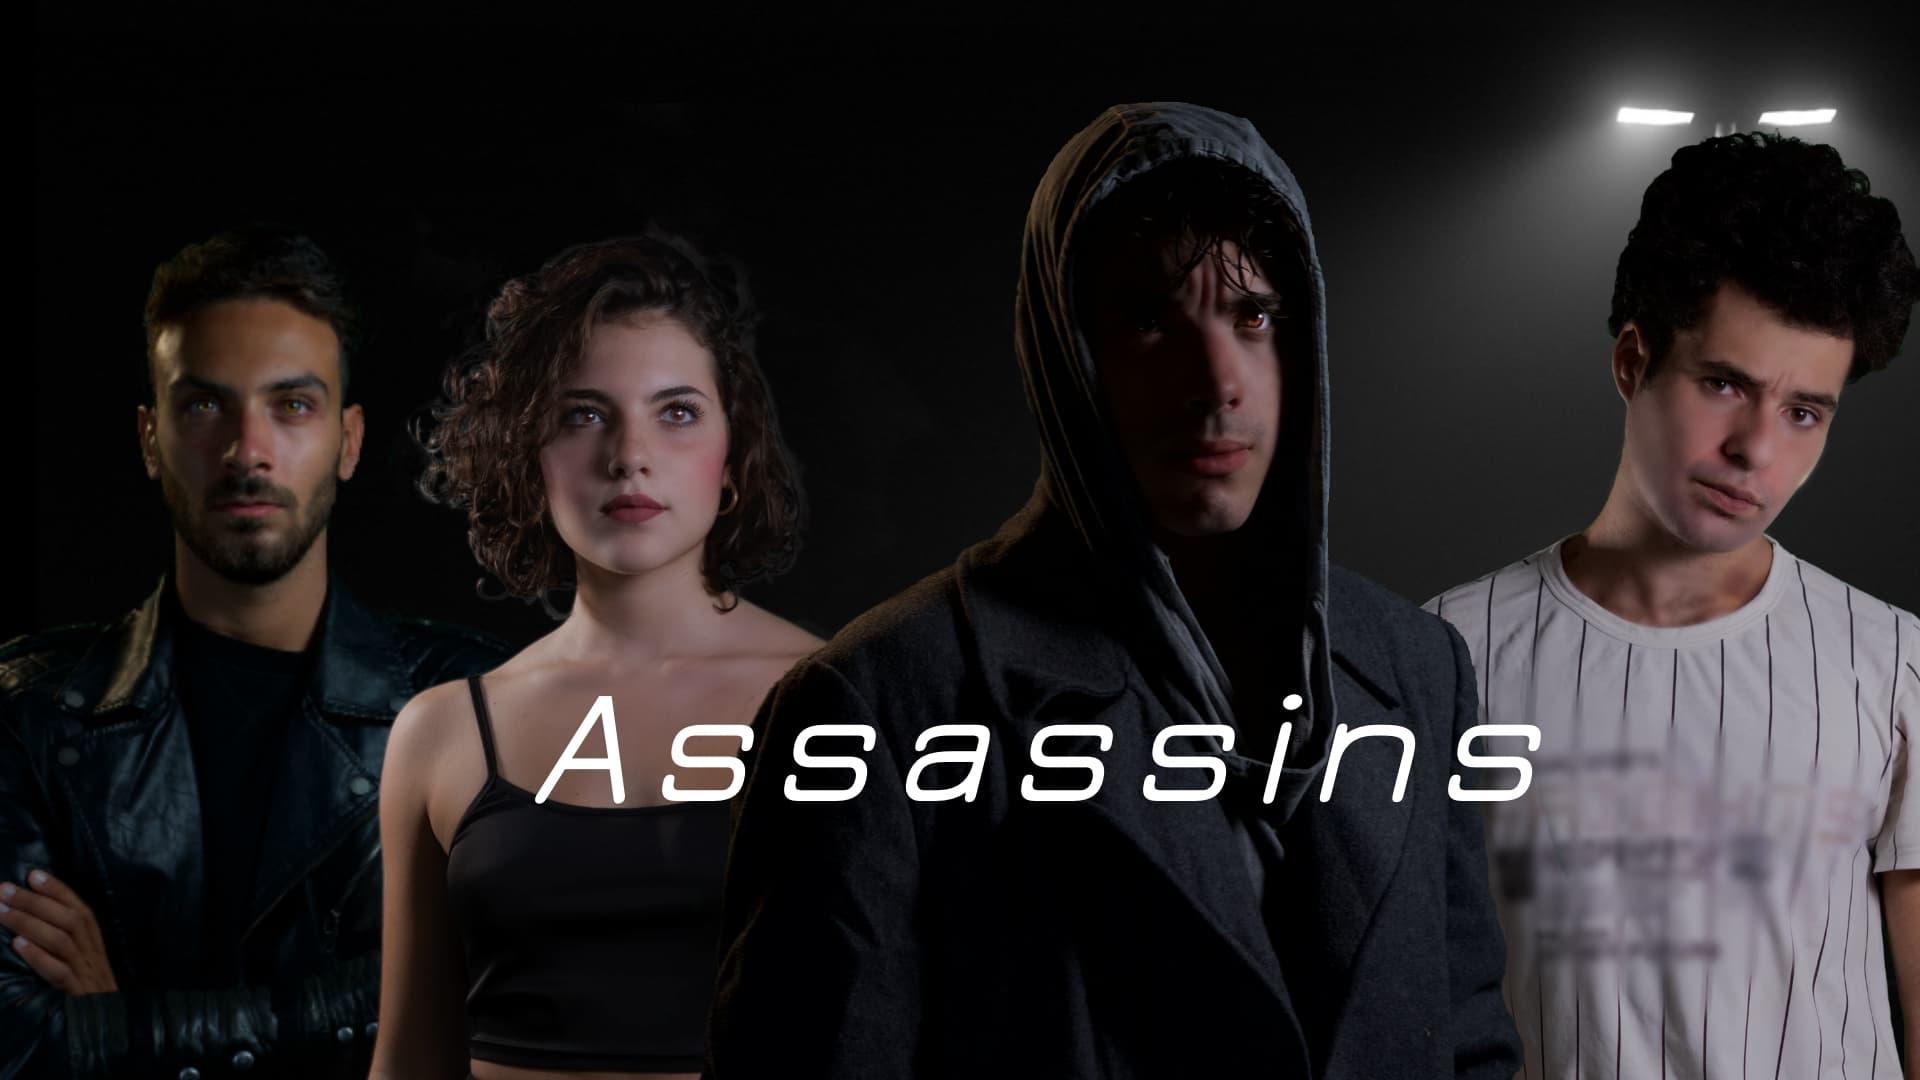 Assassins backdrop